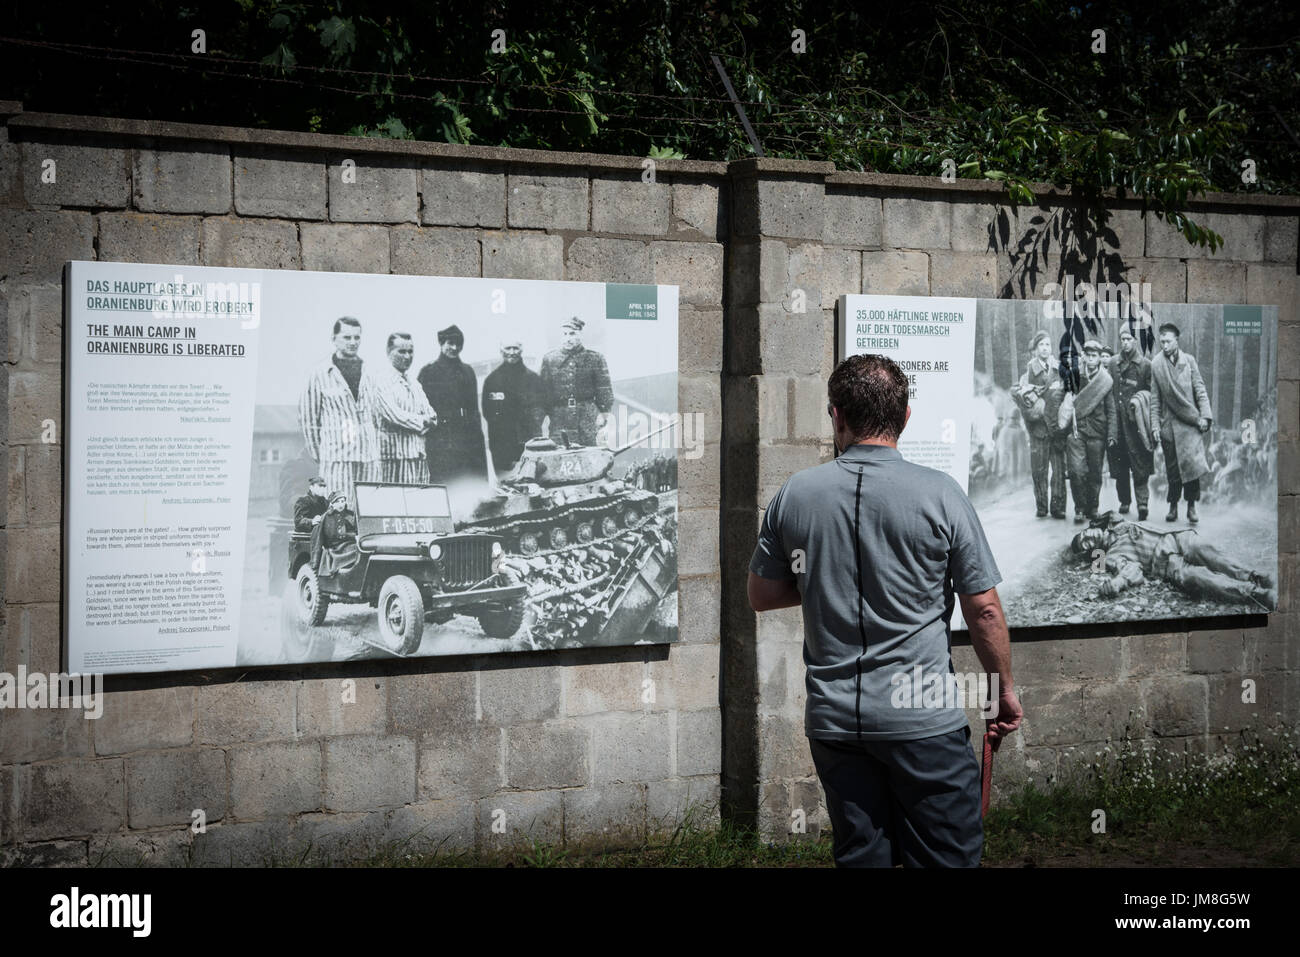 Sachsenhausen ist ein Nazi-Konzentrationslager, in der Gegend namens Sandhausen (jetzt Sachsenhausen) in Oranienburg Aerea, 35 Kilometer nördlich von Berlin im September 1938 abgeschlossen. Es war bereits aktiv seit 22. März 1936 als Arbeitslager für politische Gefangene am Juli 19,2017 in Berlin, Deutschland. (Foto: Andrea Ronchini/Pacific Press) Stockfoto